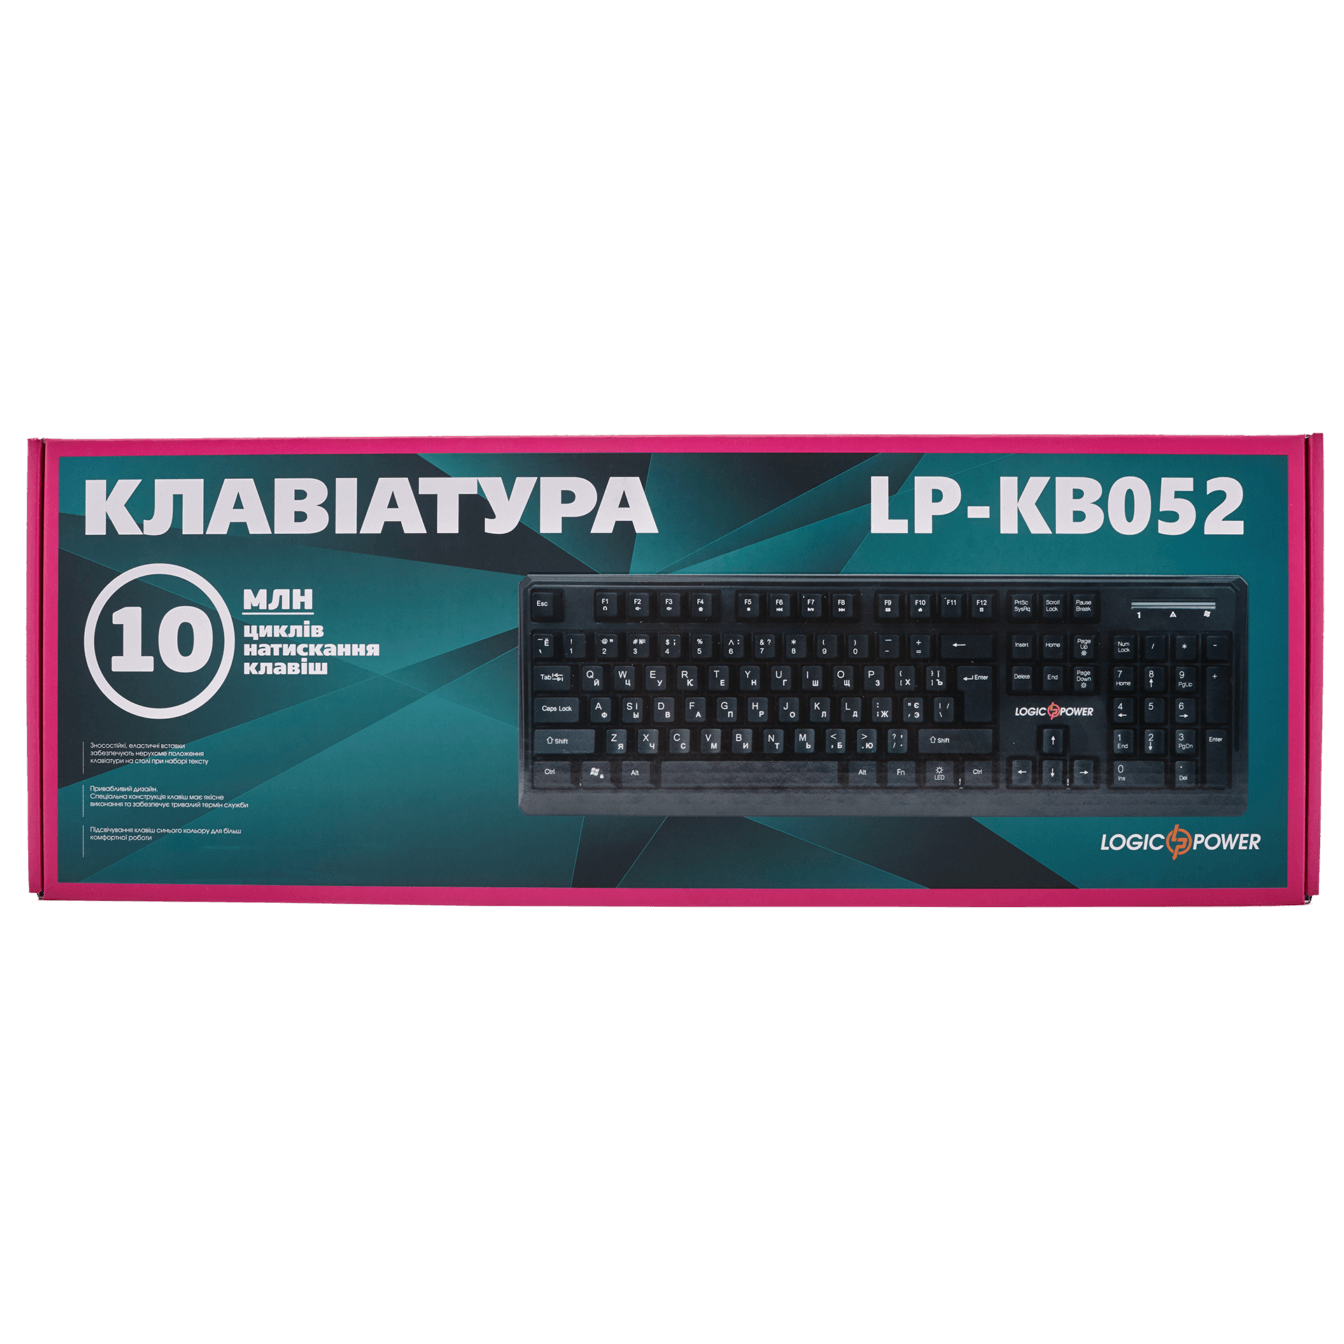 LP-KB 052